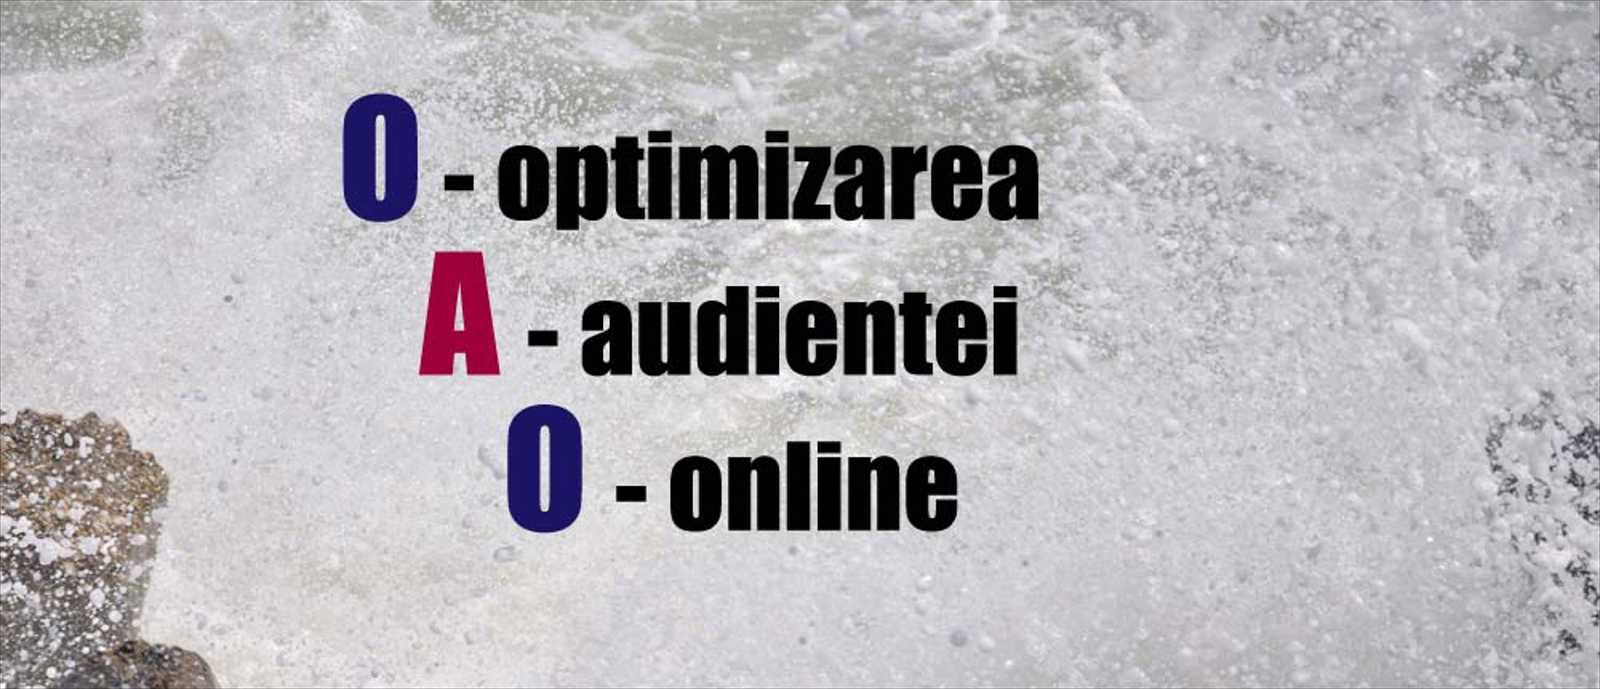 OAO - Optimizarea audientei online - noul trend in online